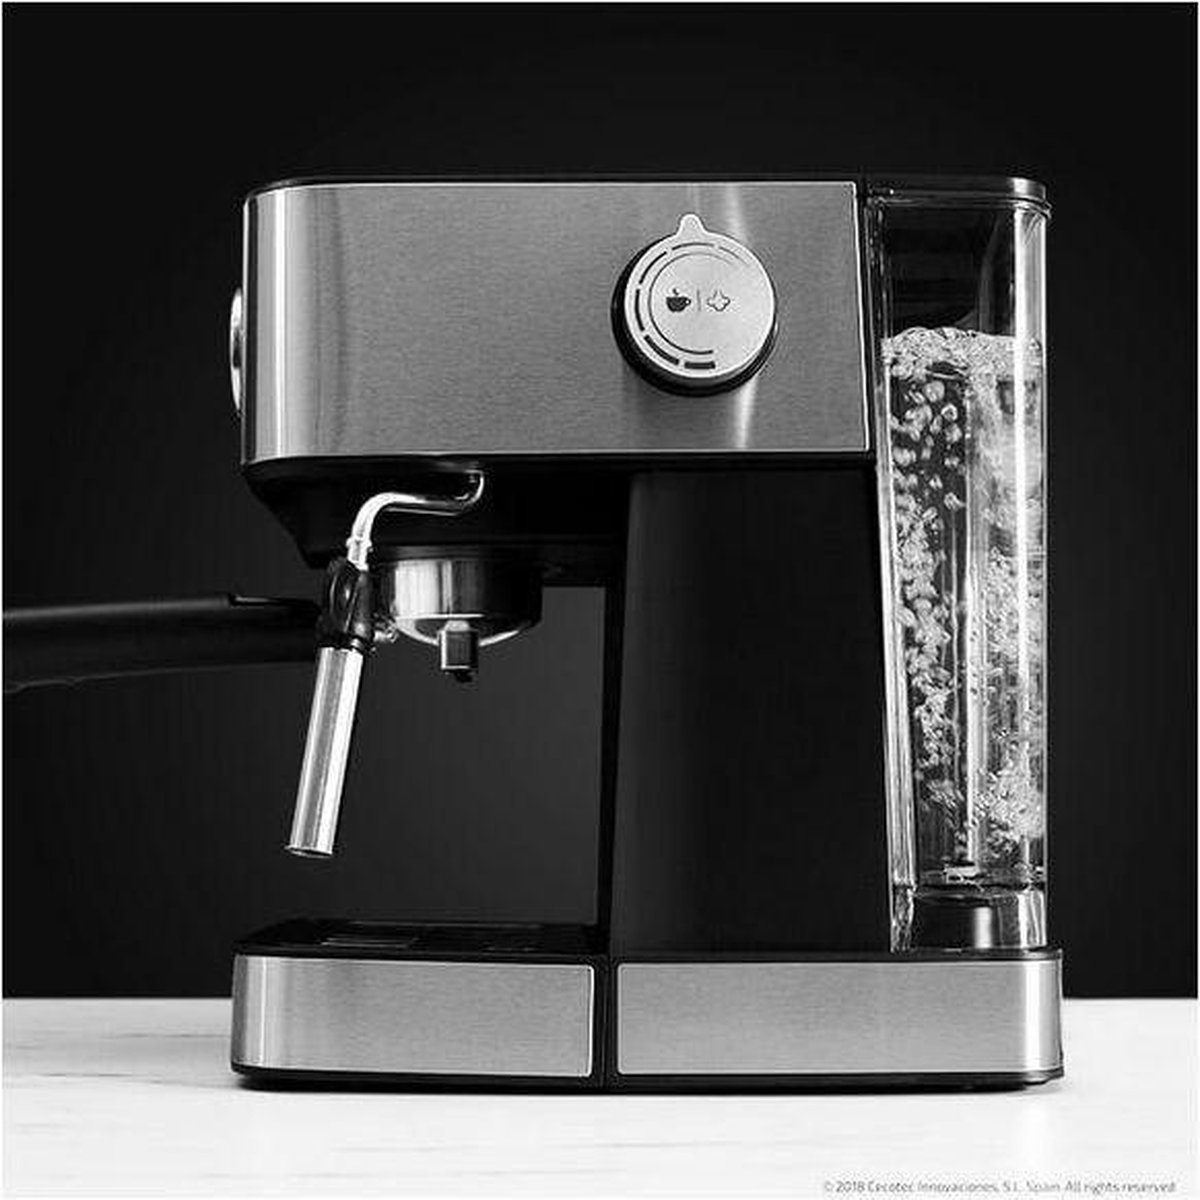 Cafetière Expresso Power Espresso 20 Cecotec (01503) - Kit-M